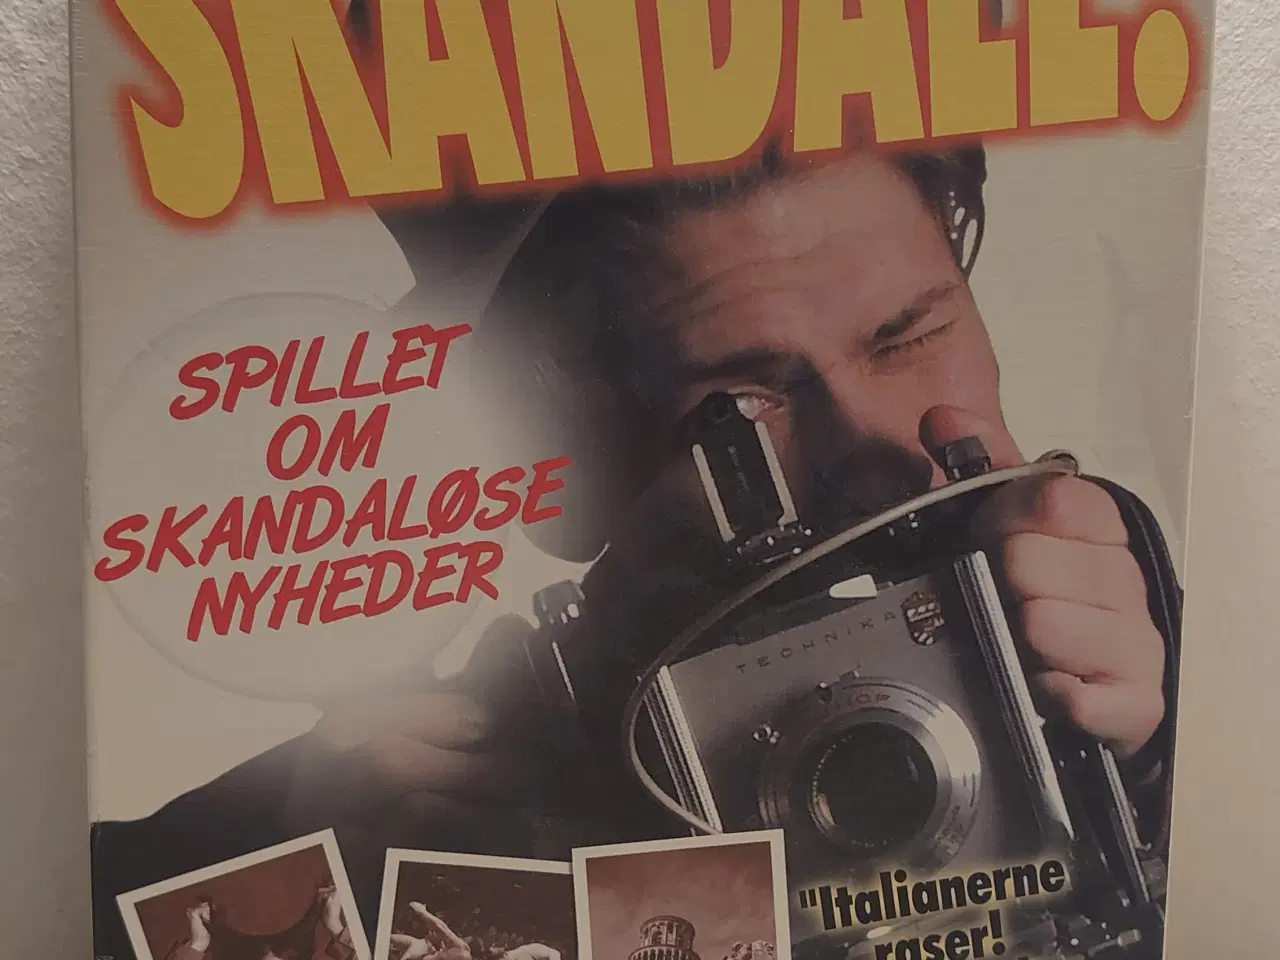 Billede 1 - "Skandale" Brætspil om skandaløse nyheder.